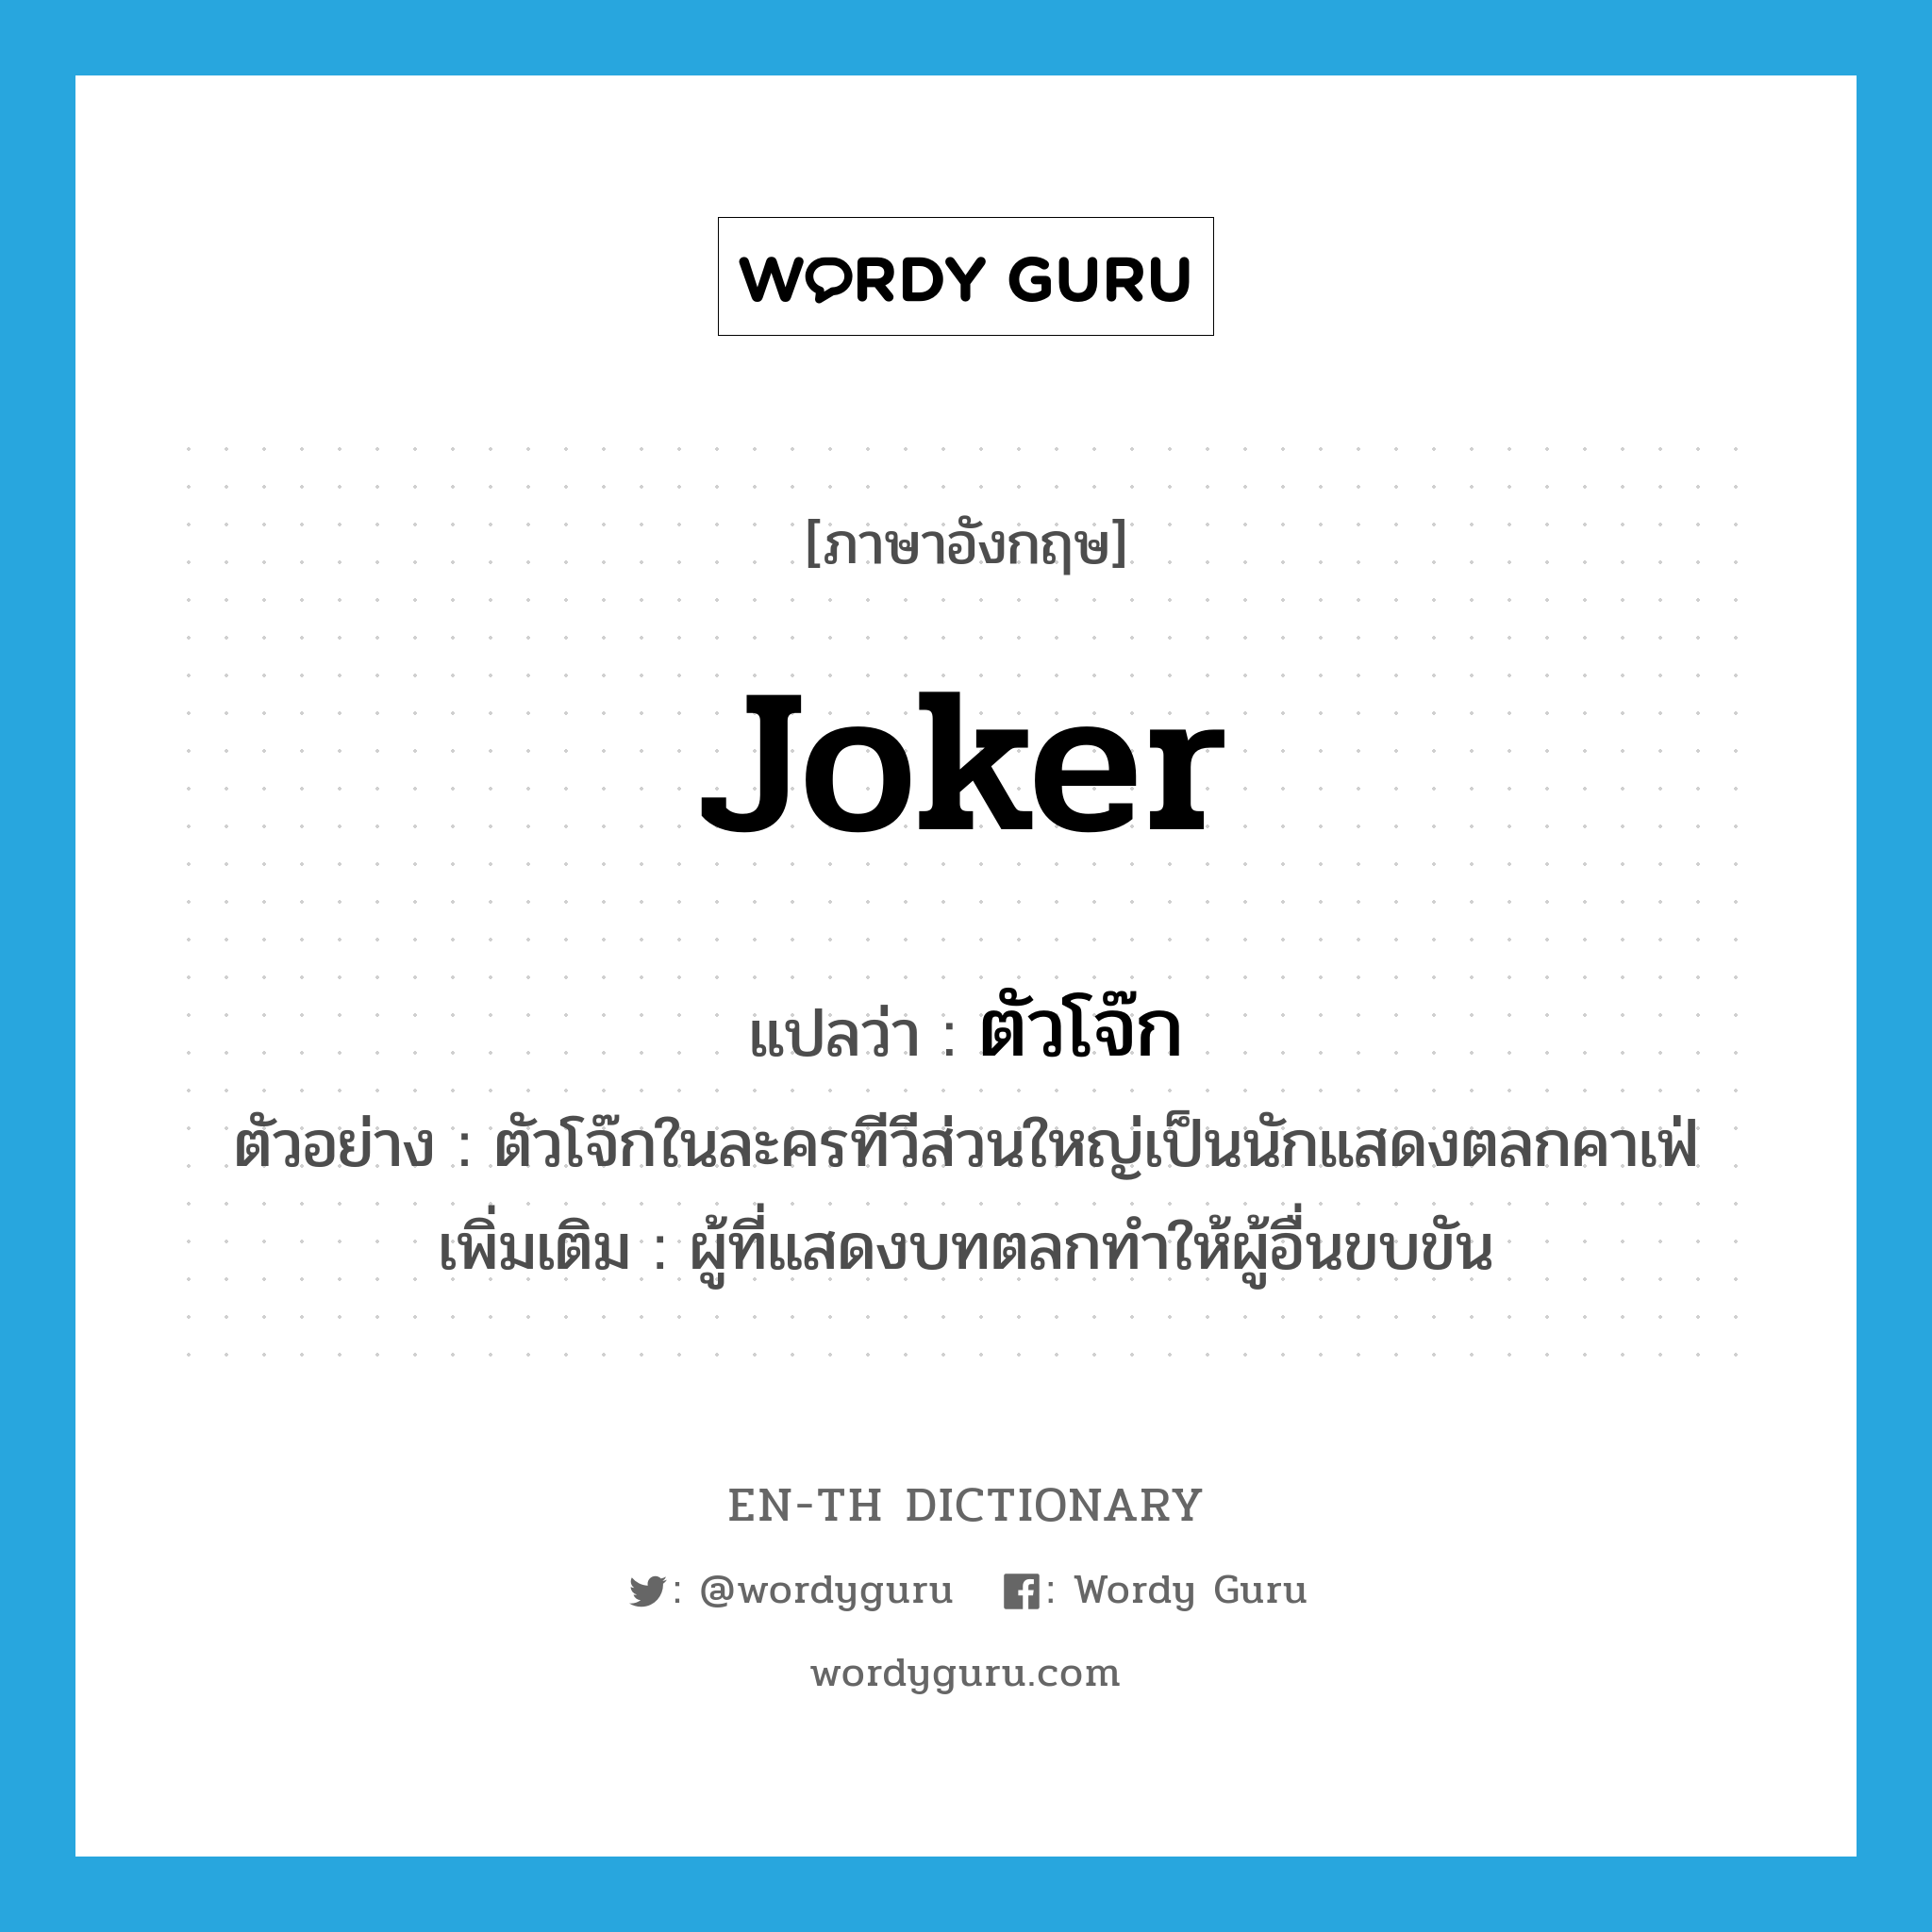 joker แปลว่า?, คำศัพท์ภาษาอังกฤษ joker แปลว่า ตัวโจ๊ก ประเภท N ตัวอย่าง ตัวโจ๊กในละครทีวีส่วนใหญ่เป็นนักแสดงตลกคาเฟ่ เพิ่มเติม ผู้ที่แสดงบทตลกทำให้ผู้อื่นขบขัน หมวด N